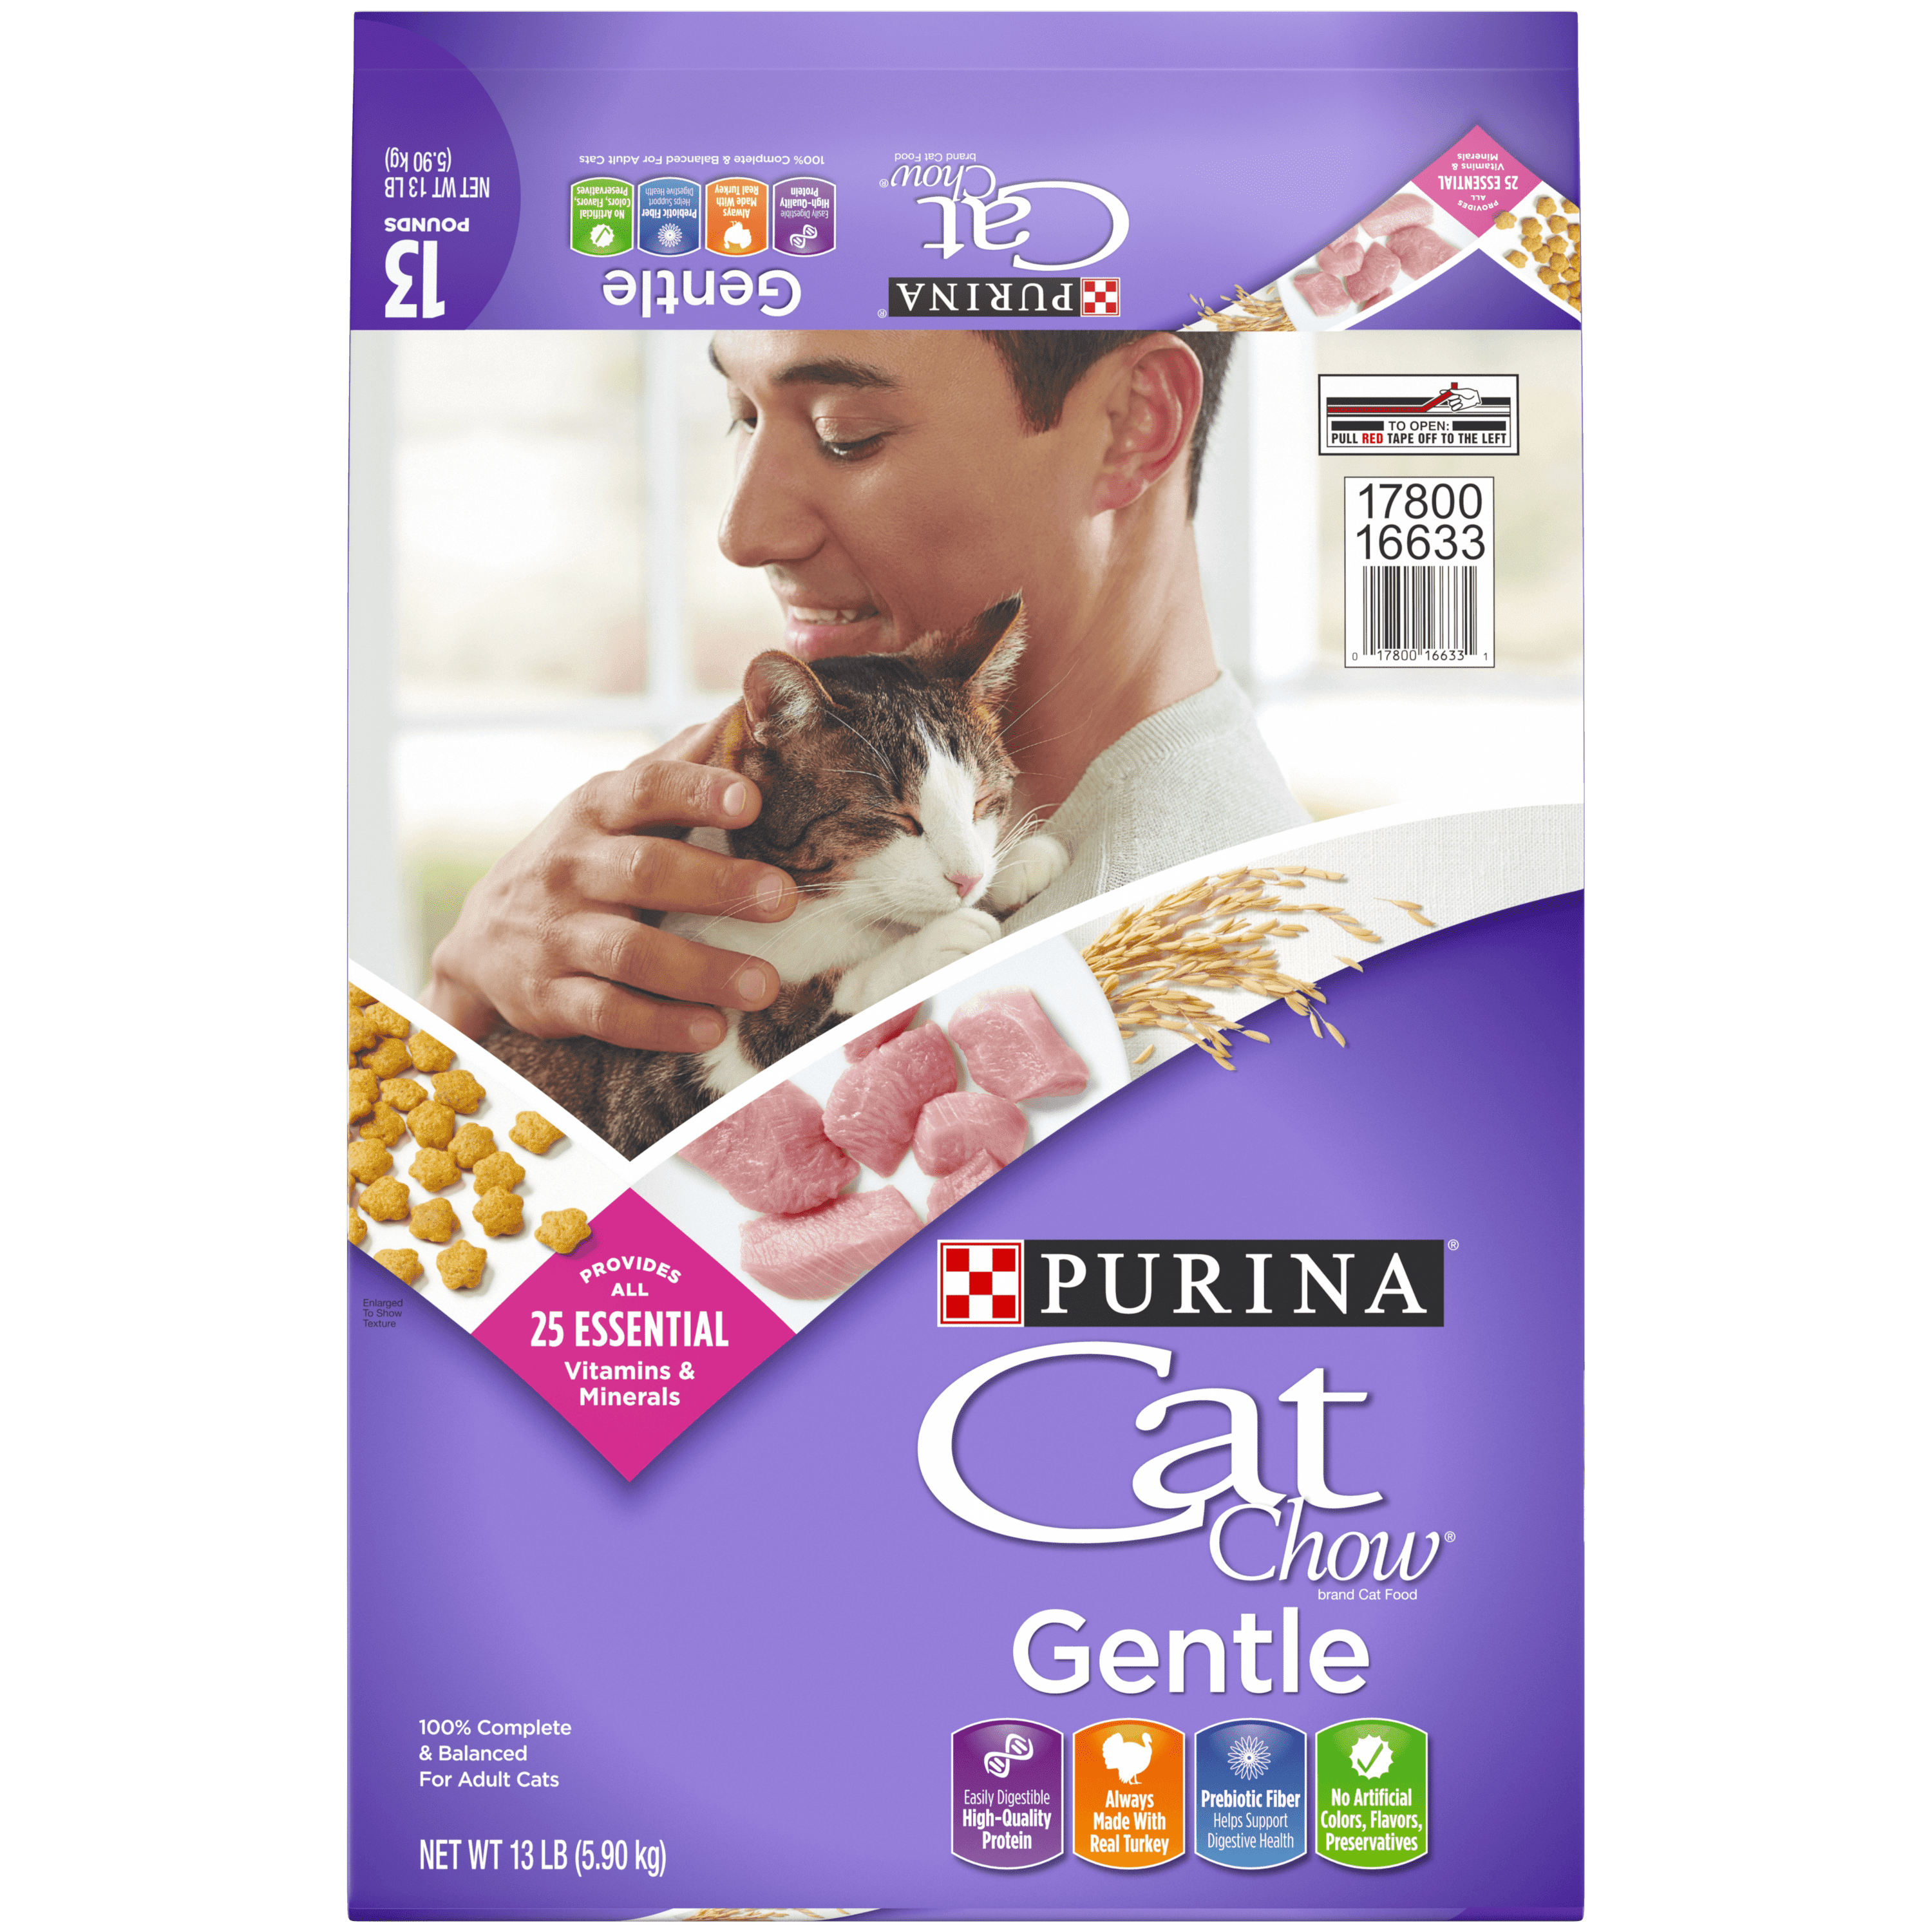 Purina Cat Chow Sensitive Stomach Dry Cat Food, Gentle, 13 lb. Bag - Walmart.com - Walmart.com